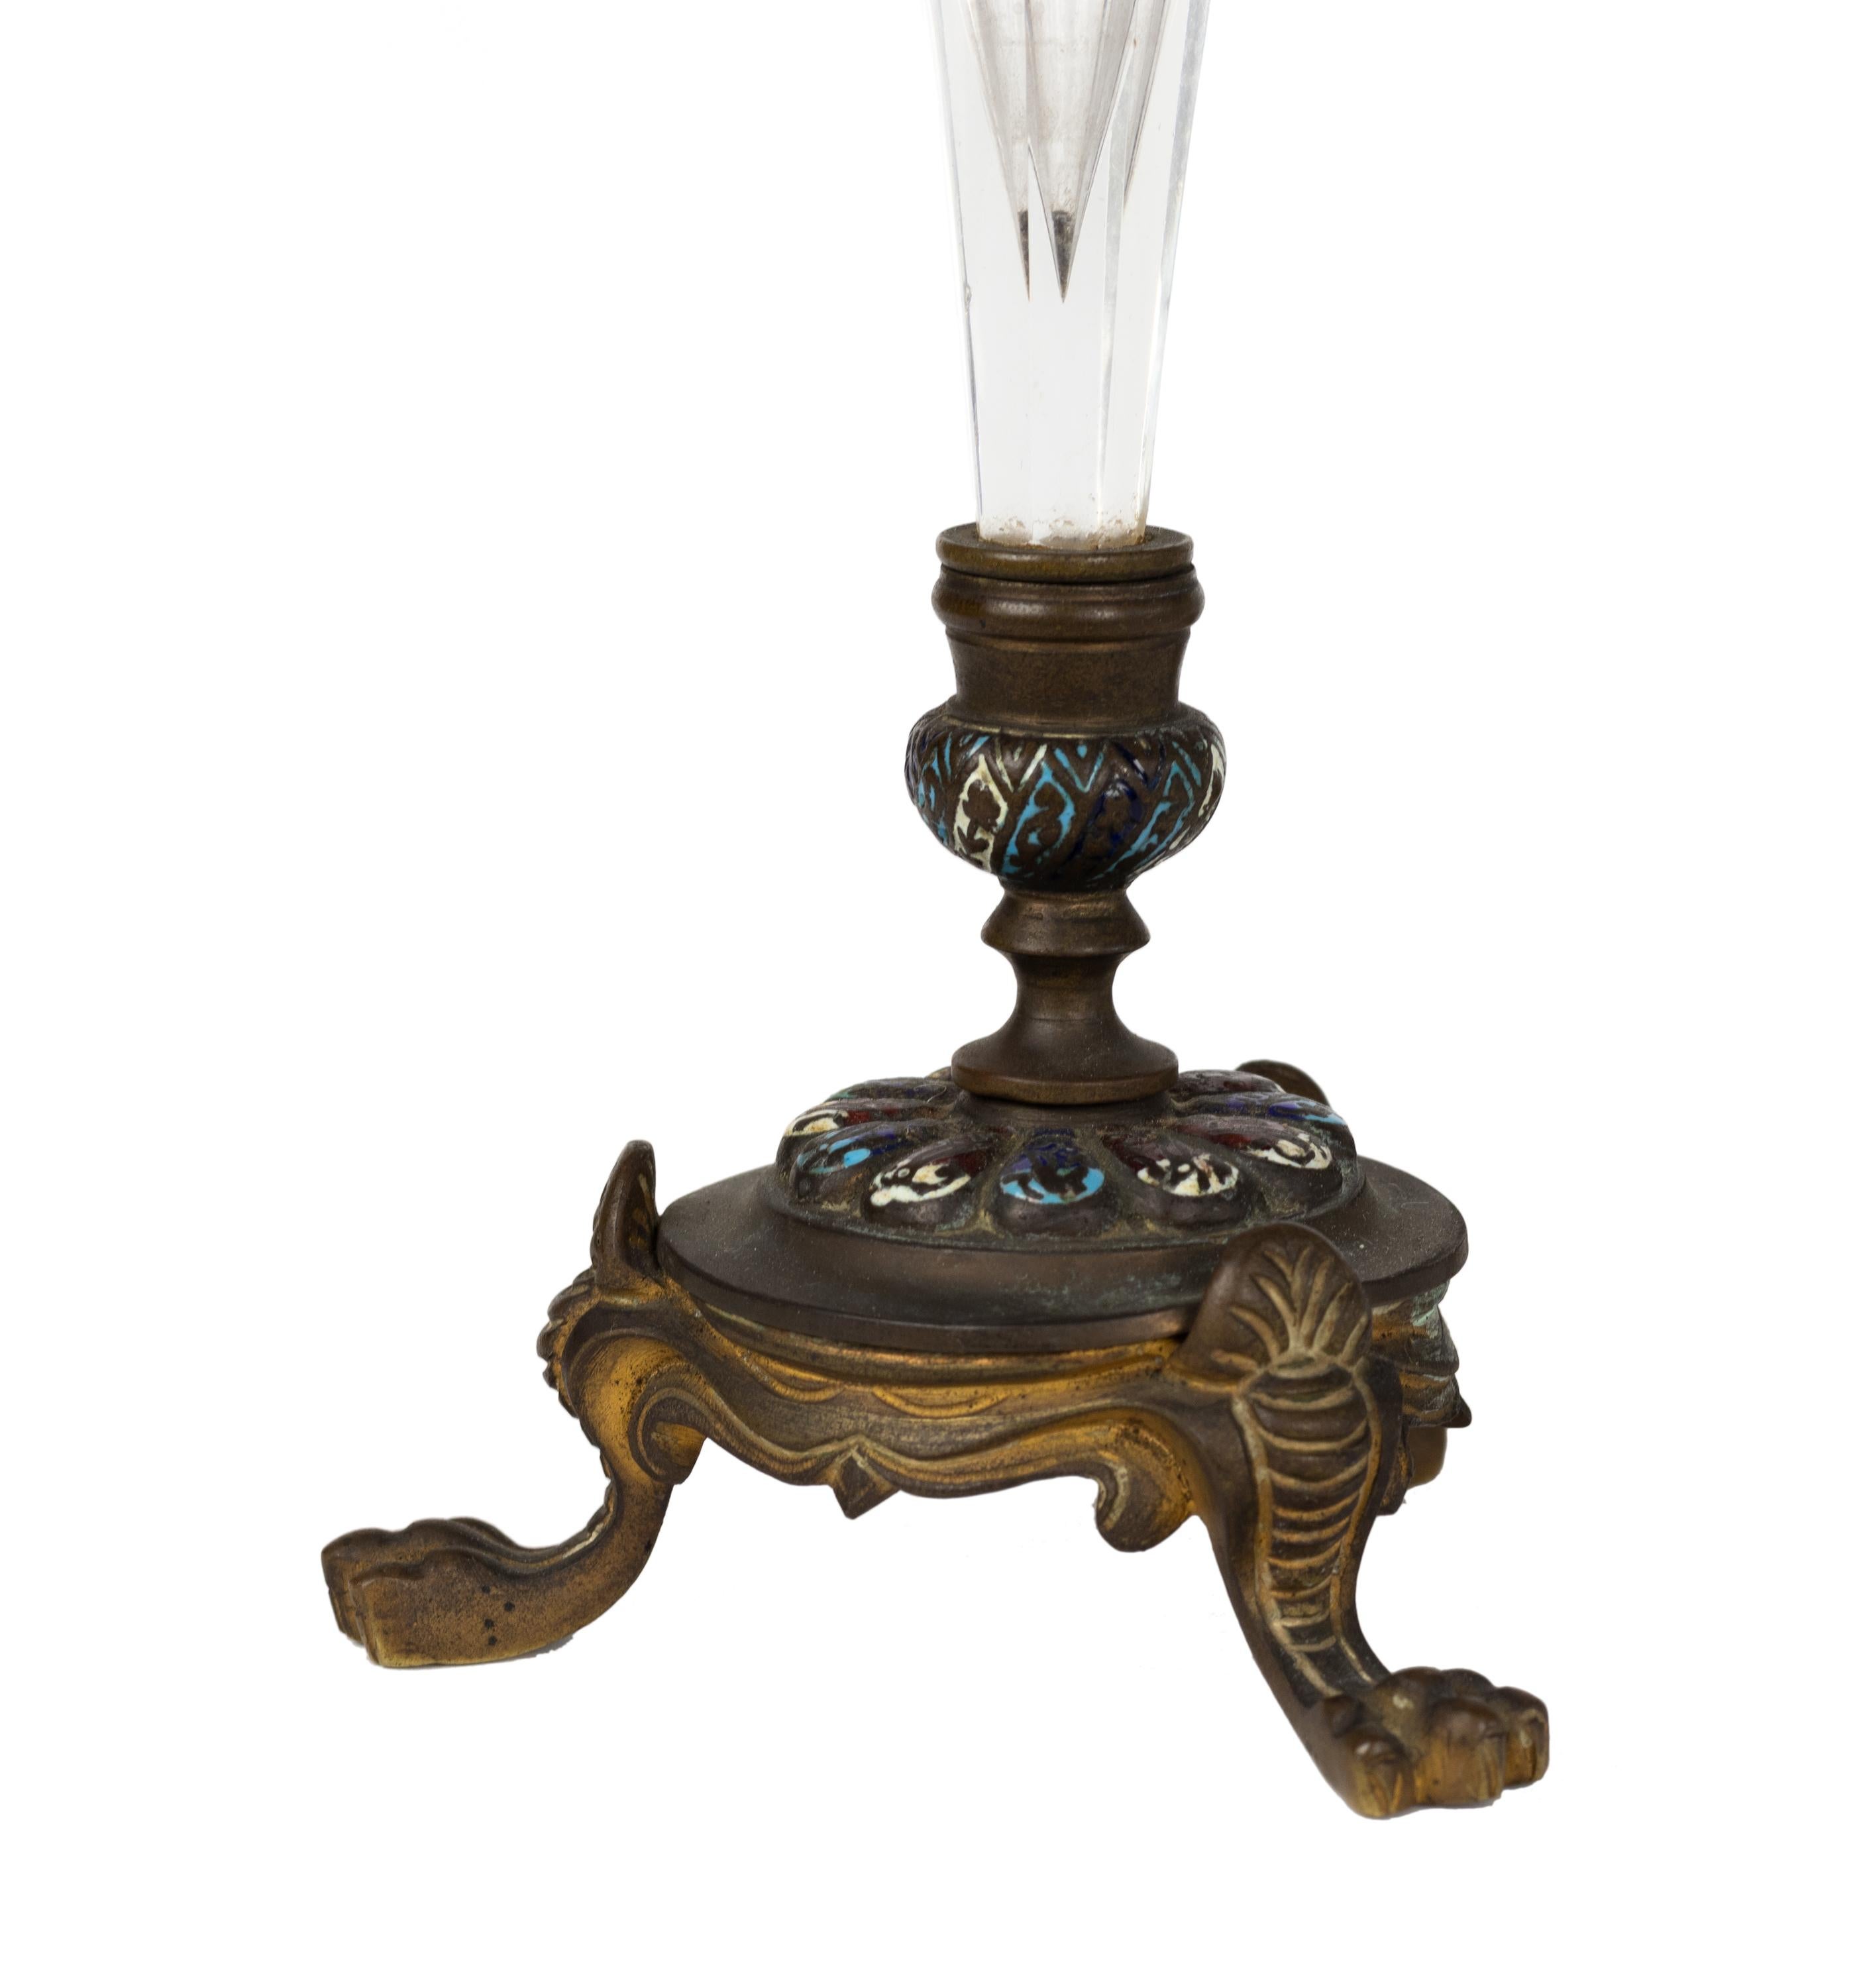 Paire de vases de forme en verre gravé, montés sur bronze doré et émail de Champleve.
Vase en verre clair en forme de trompette, en bronze doré avec des pieds de lion à la base.
Fin du 19e siècle. 

L'émaillage champlevé est une technique décorative